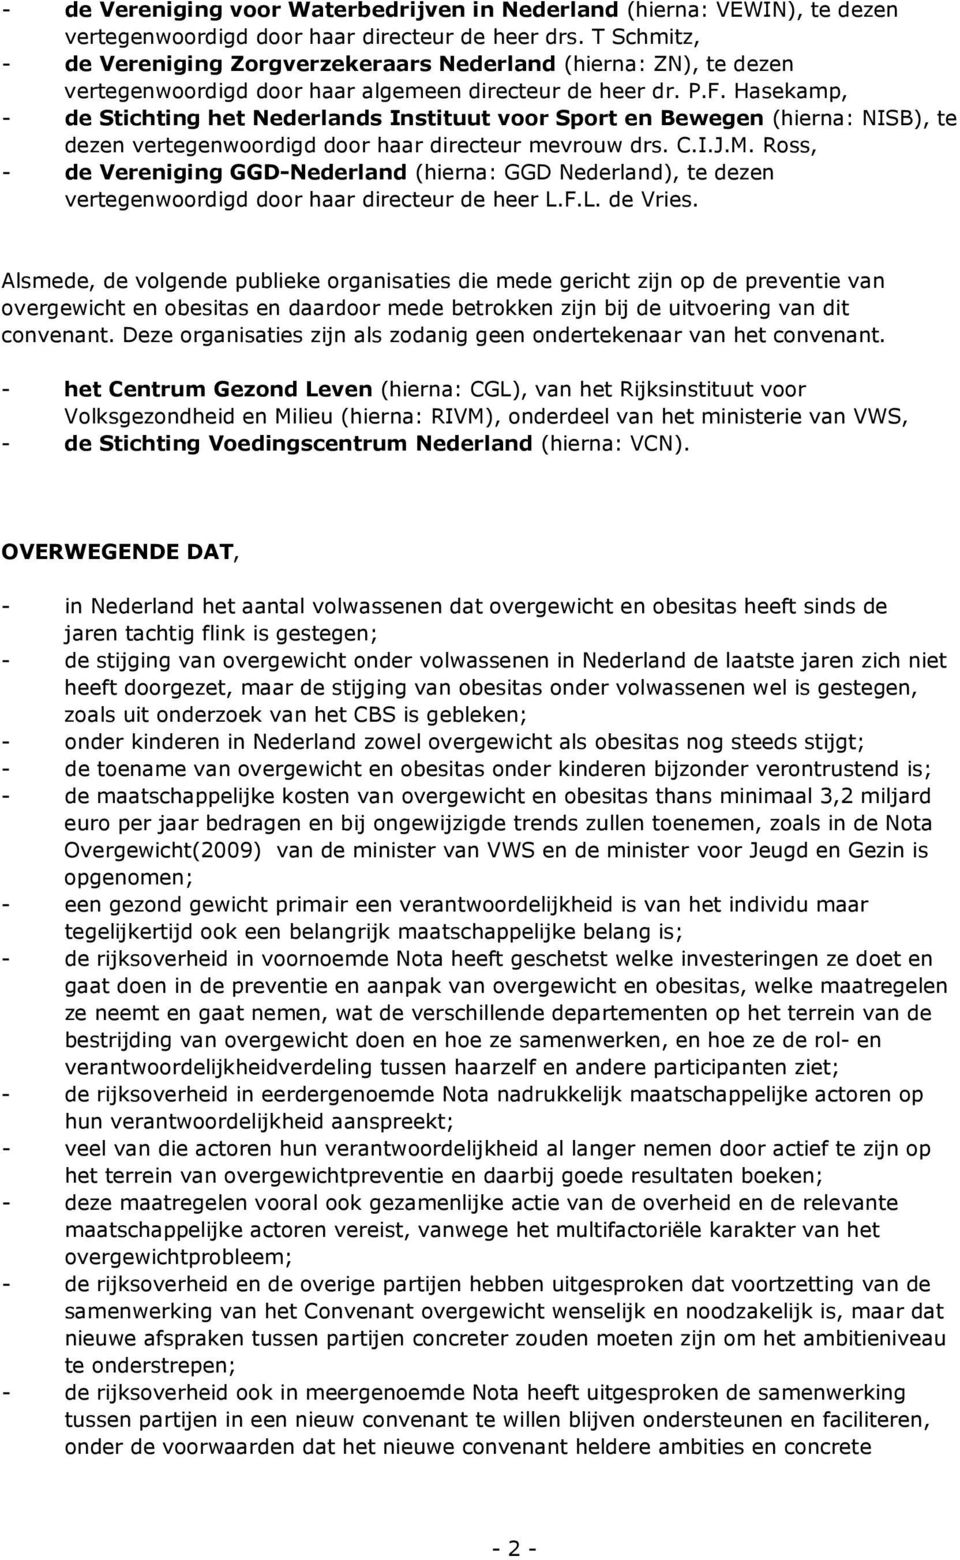 Hasekamp, - de Stichting het Nederlands Instituut voor Sport en Bewegen (hierna: NISB), te dezen vertegenwoordigd door haar directeur mevrouw drs. C.I.J.M.